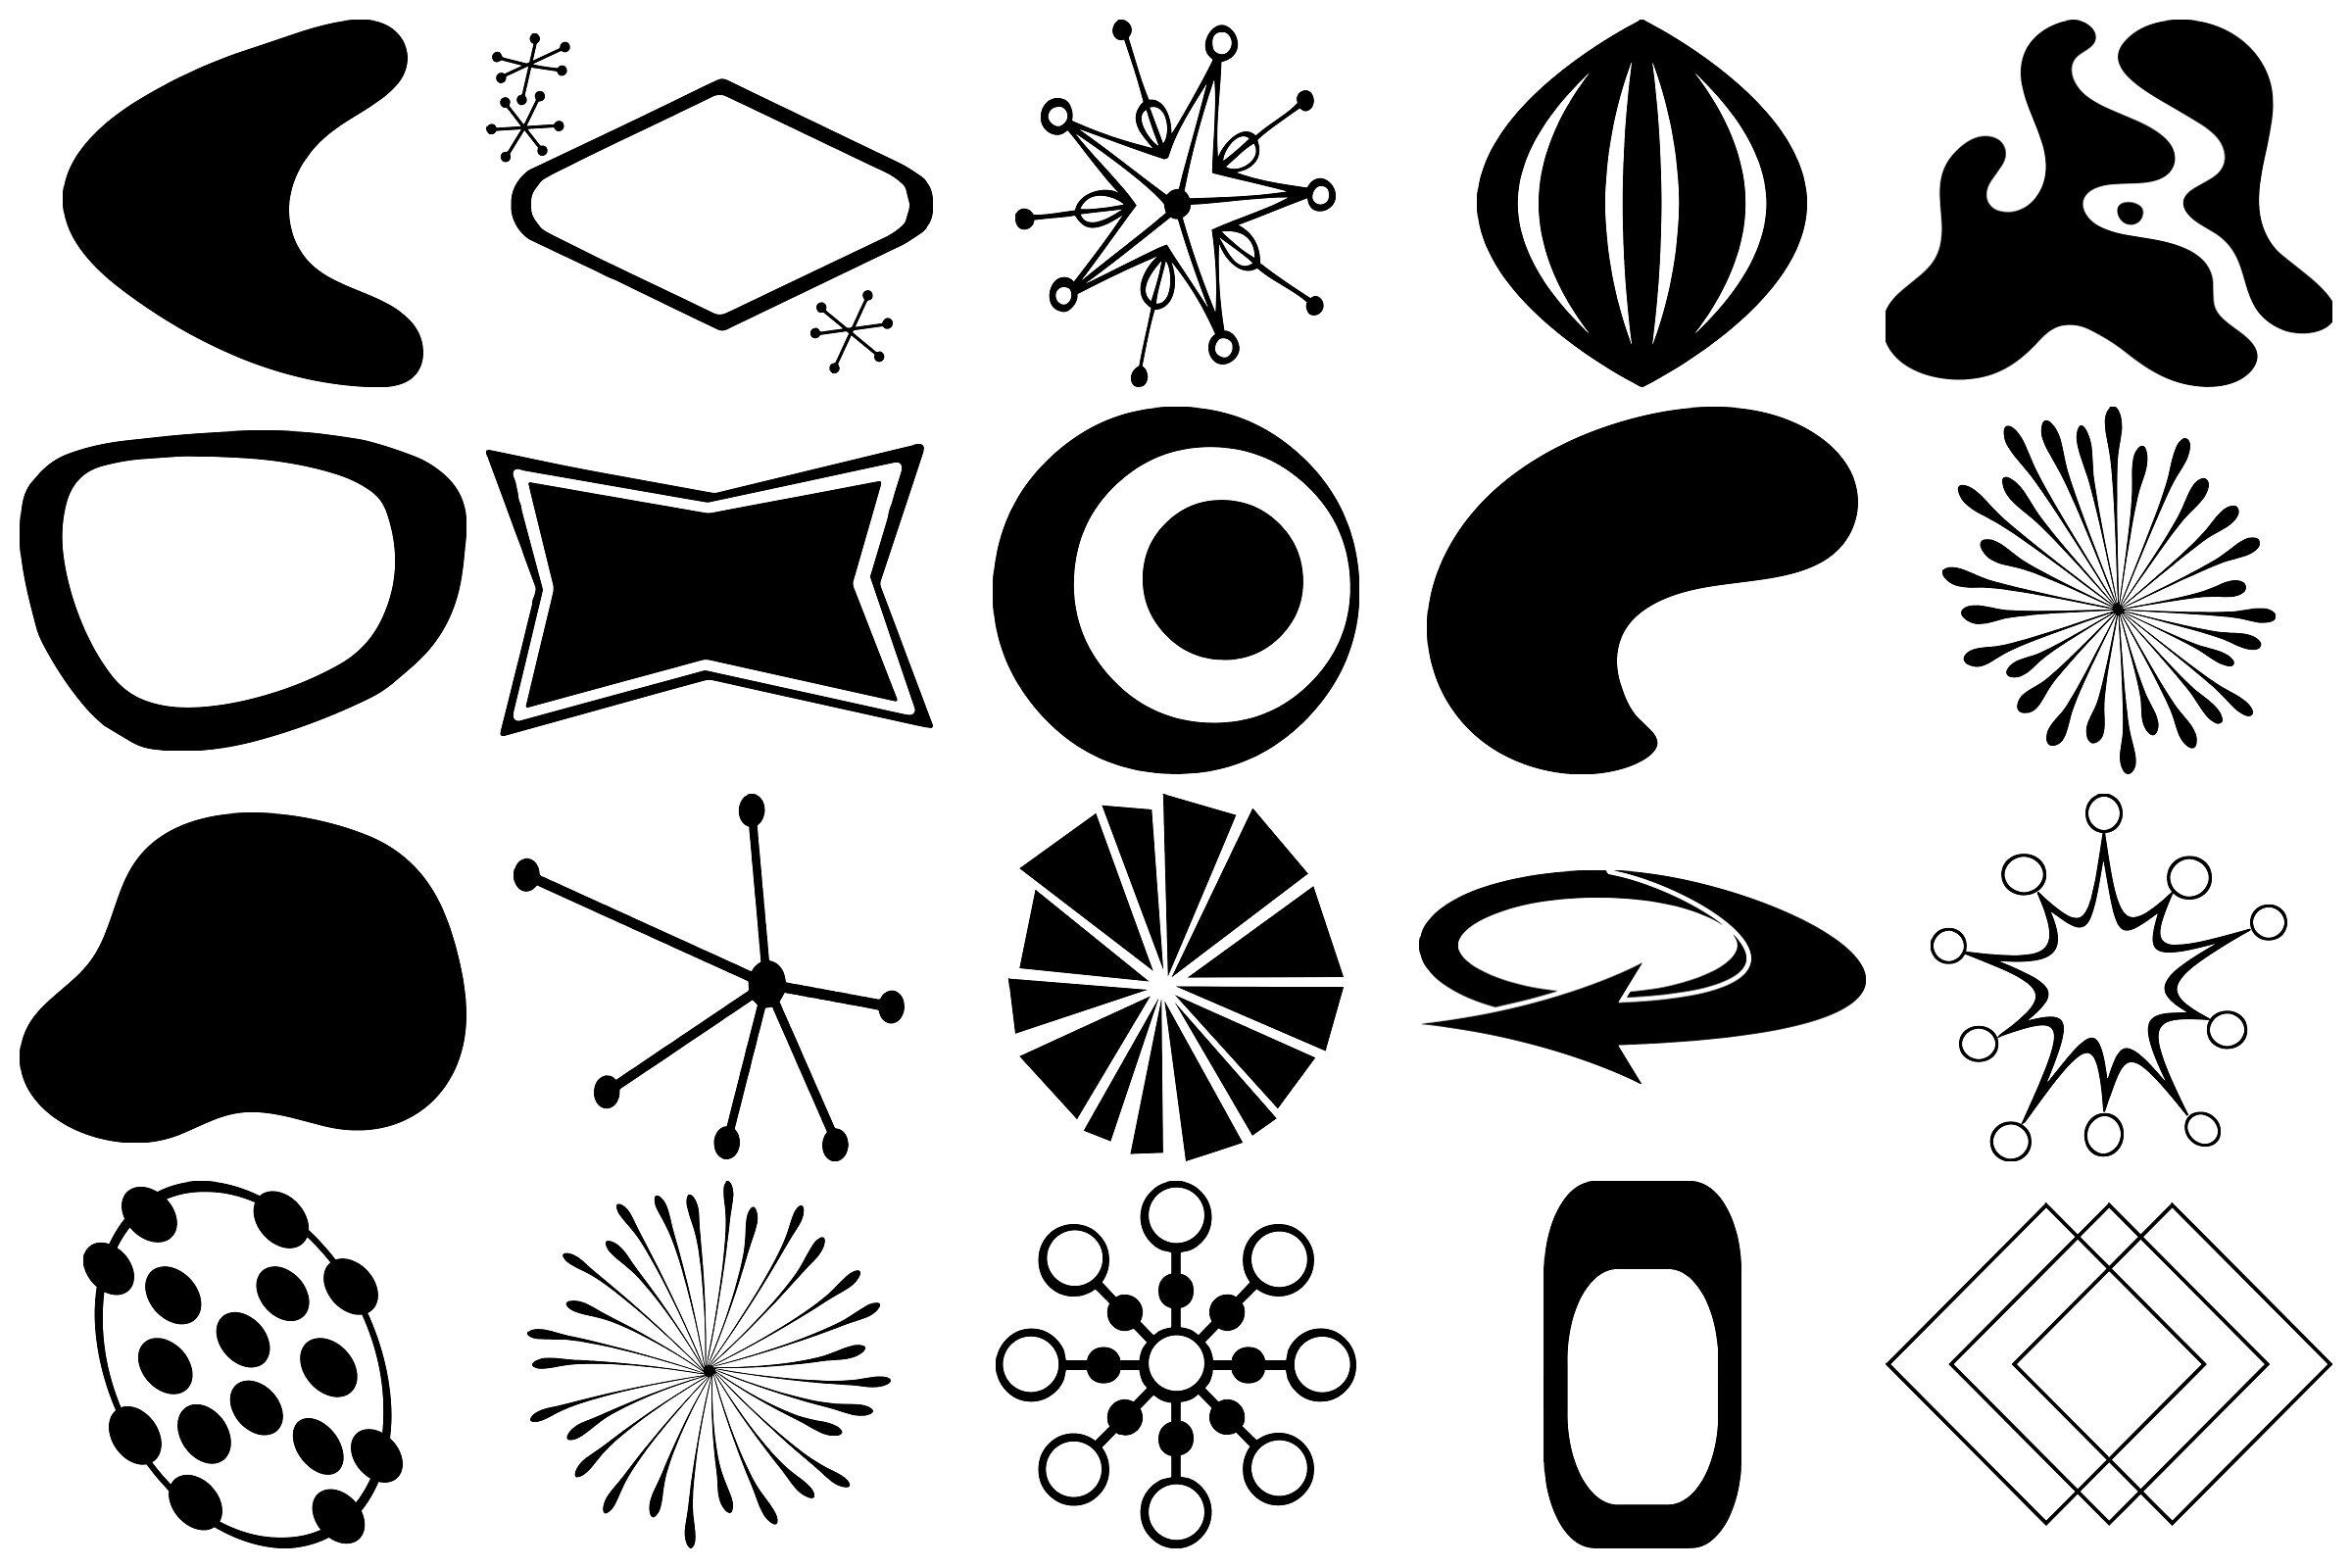 mid century modern graphic design elements